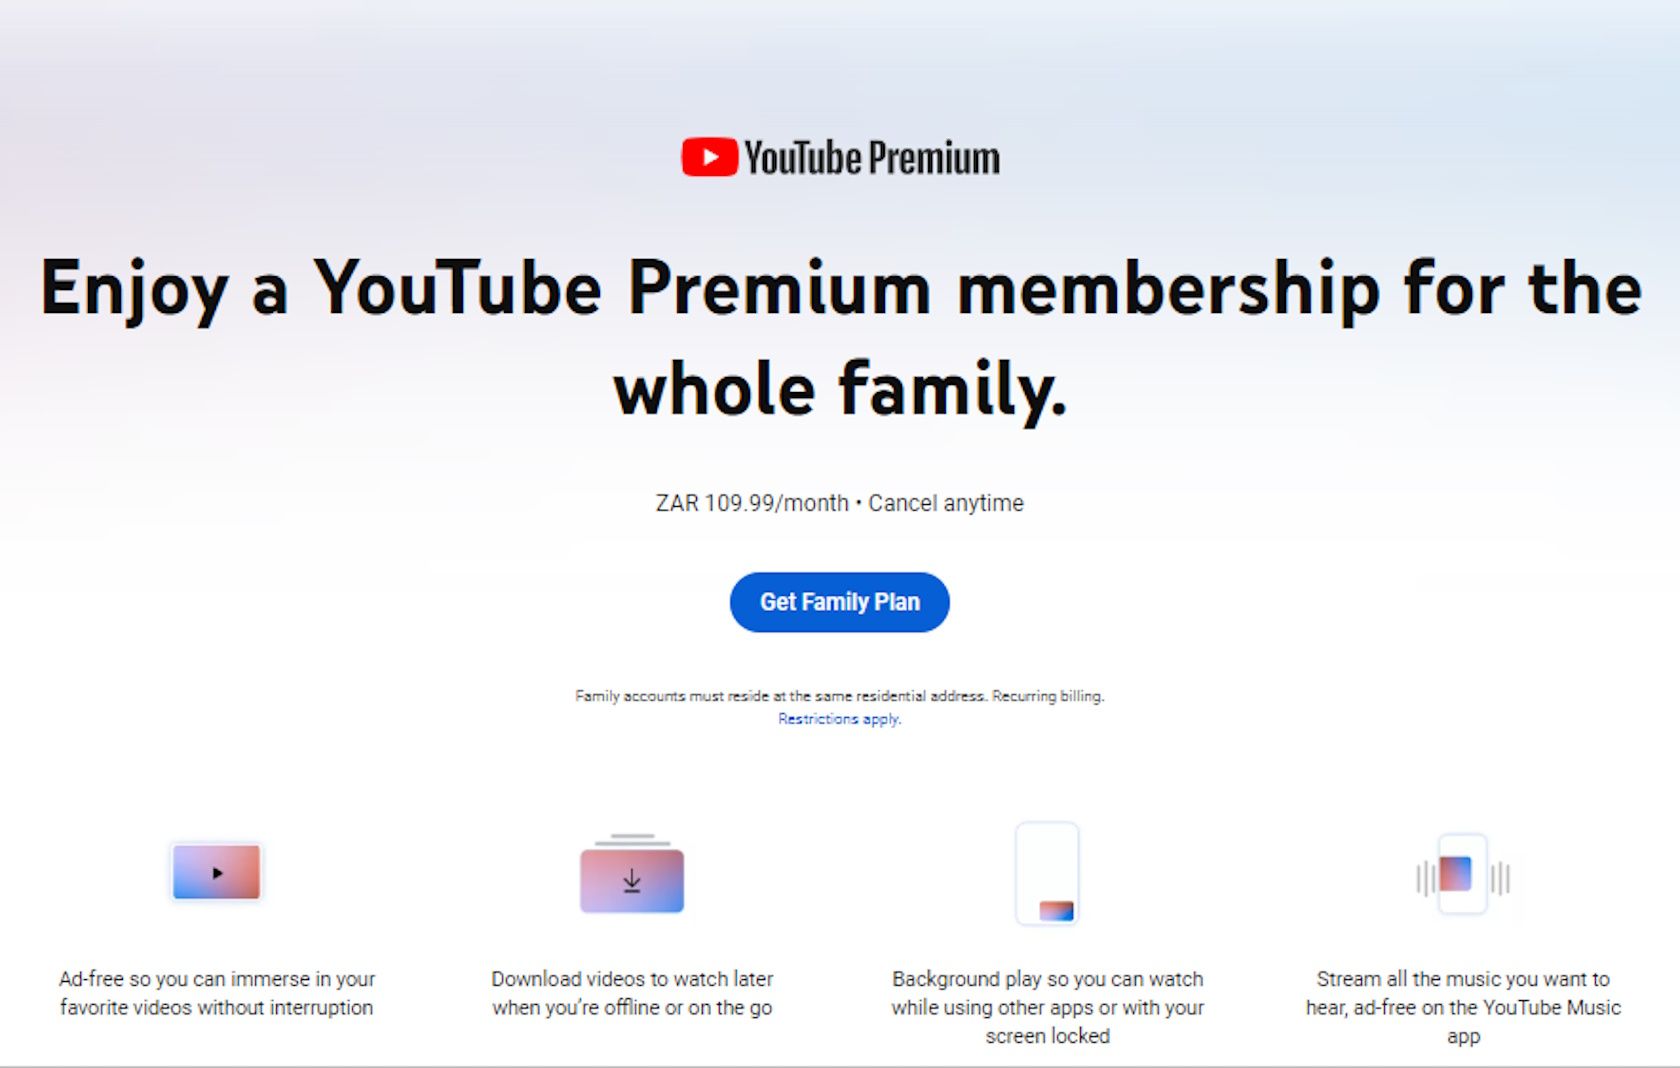 youtubw premium membership get family plan